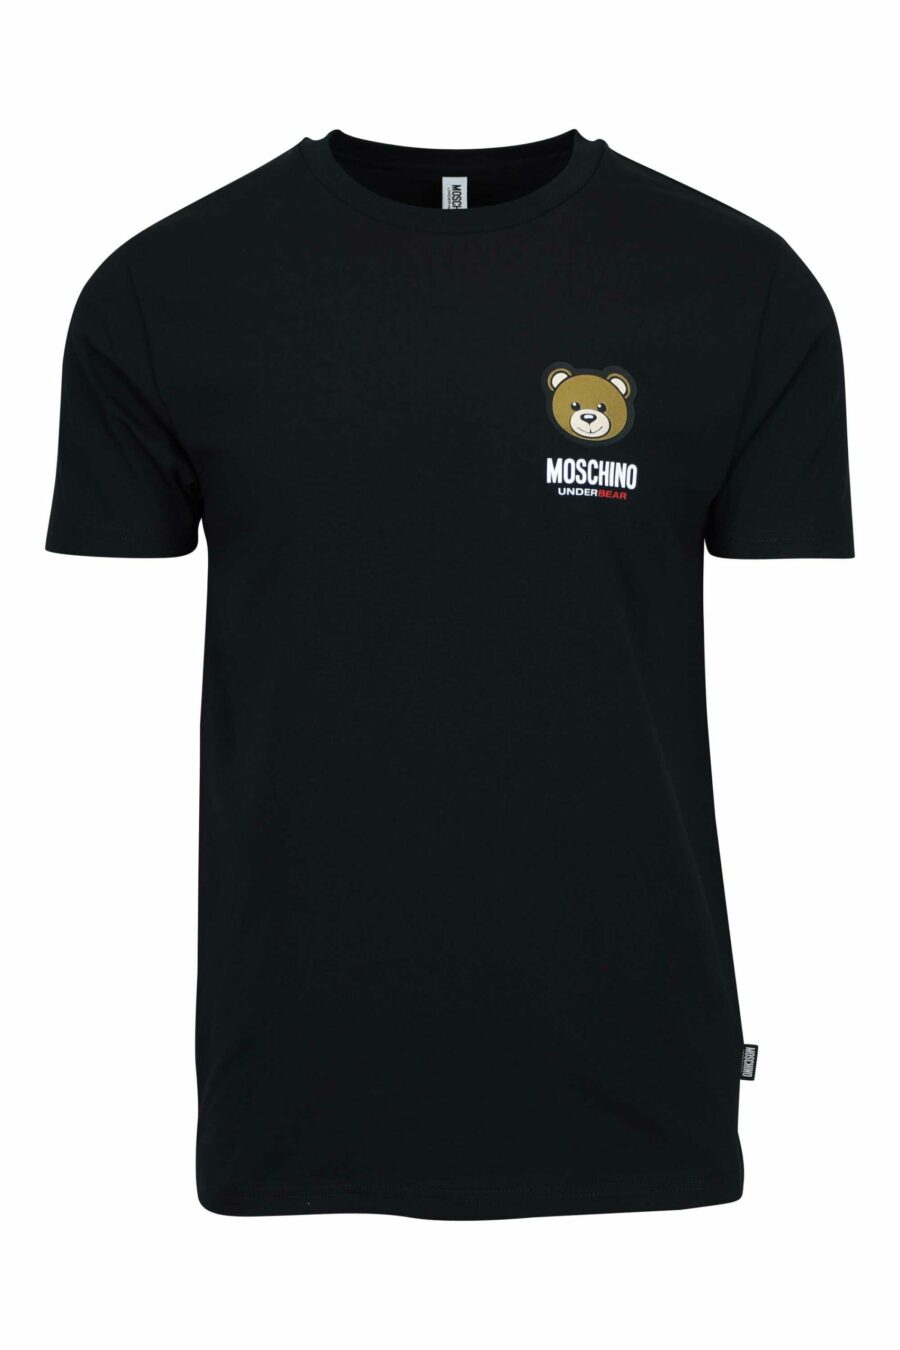 Camiseta negra con minilogo parche oso "underbear" - 667113605739 scaled